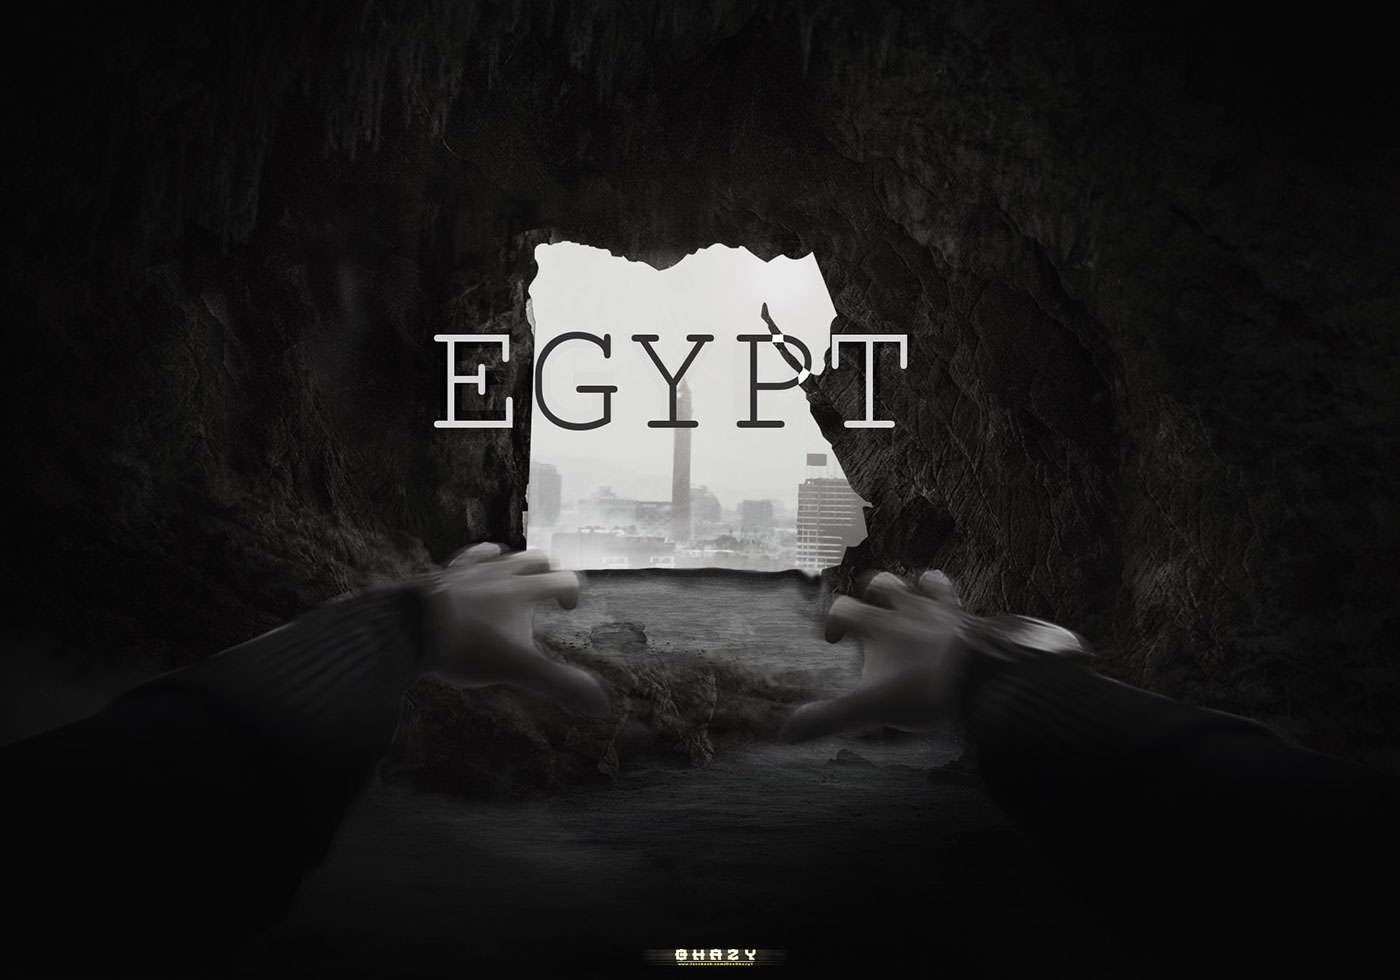 egypt will Return dark designer design photoshop art manipulation Ps25Under25